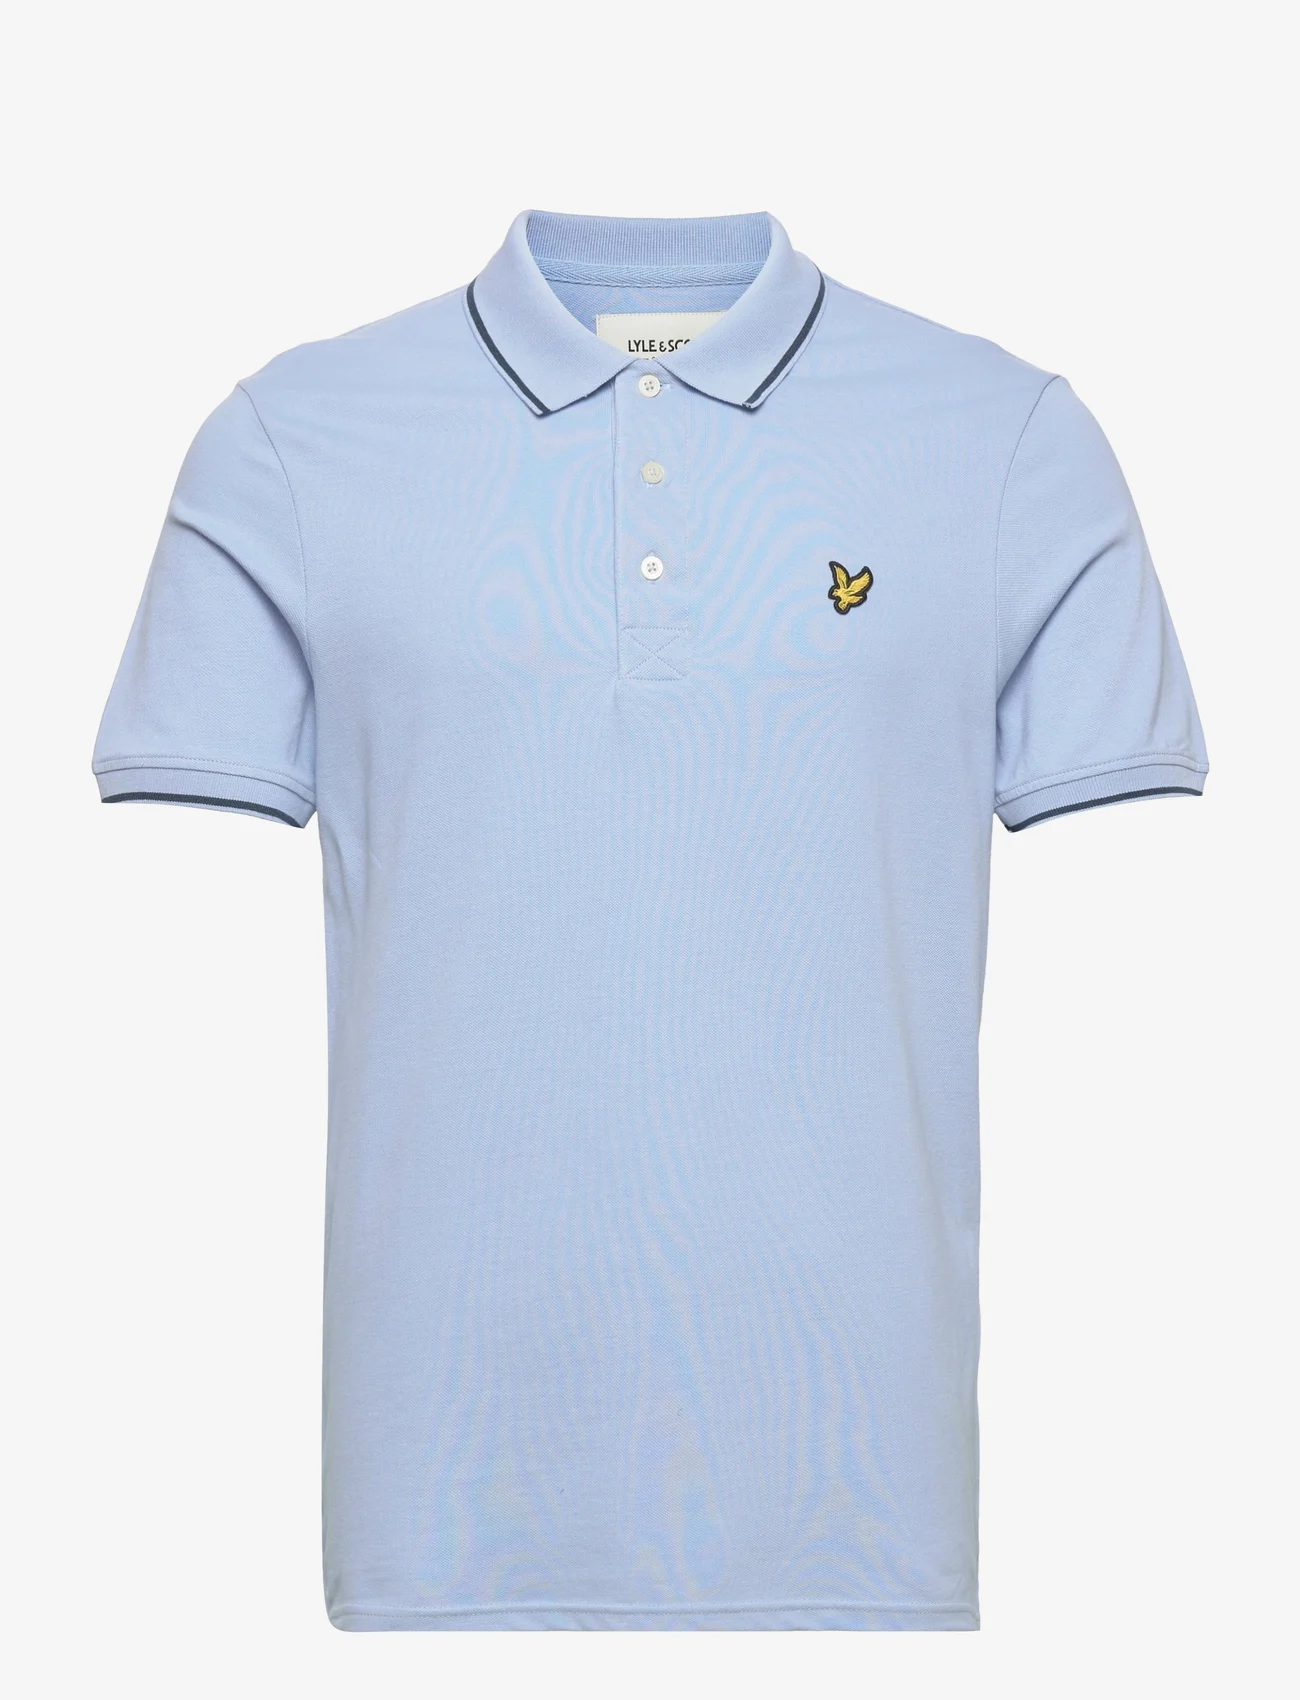 Lyle & Scott - Tipped Polo Shirt - kortärmade pikéer - light blue/ dark navy - 0